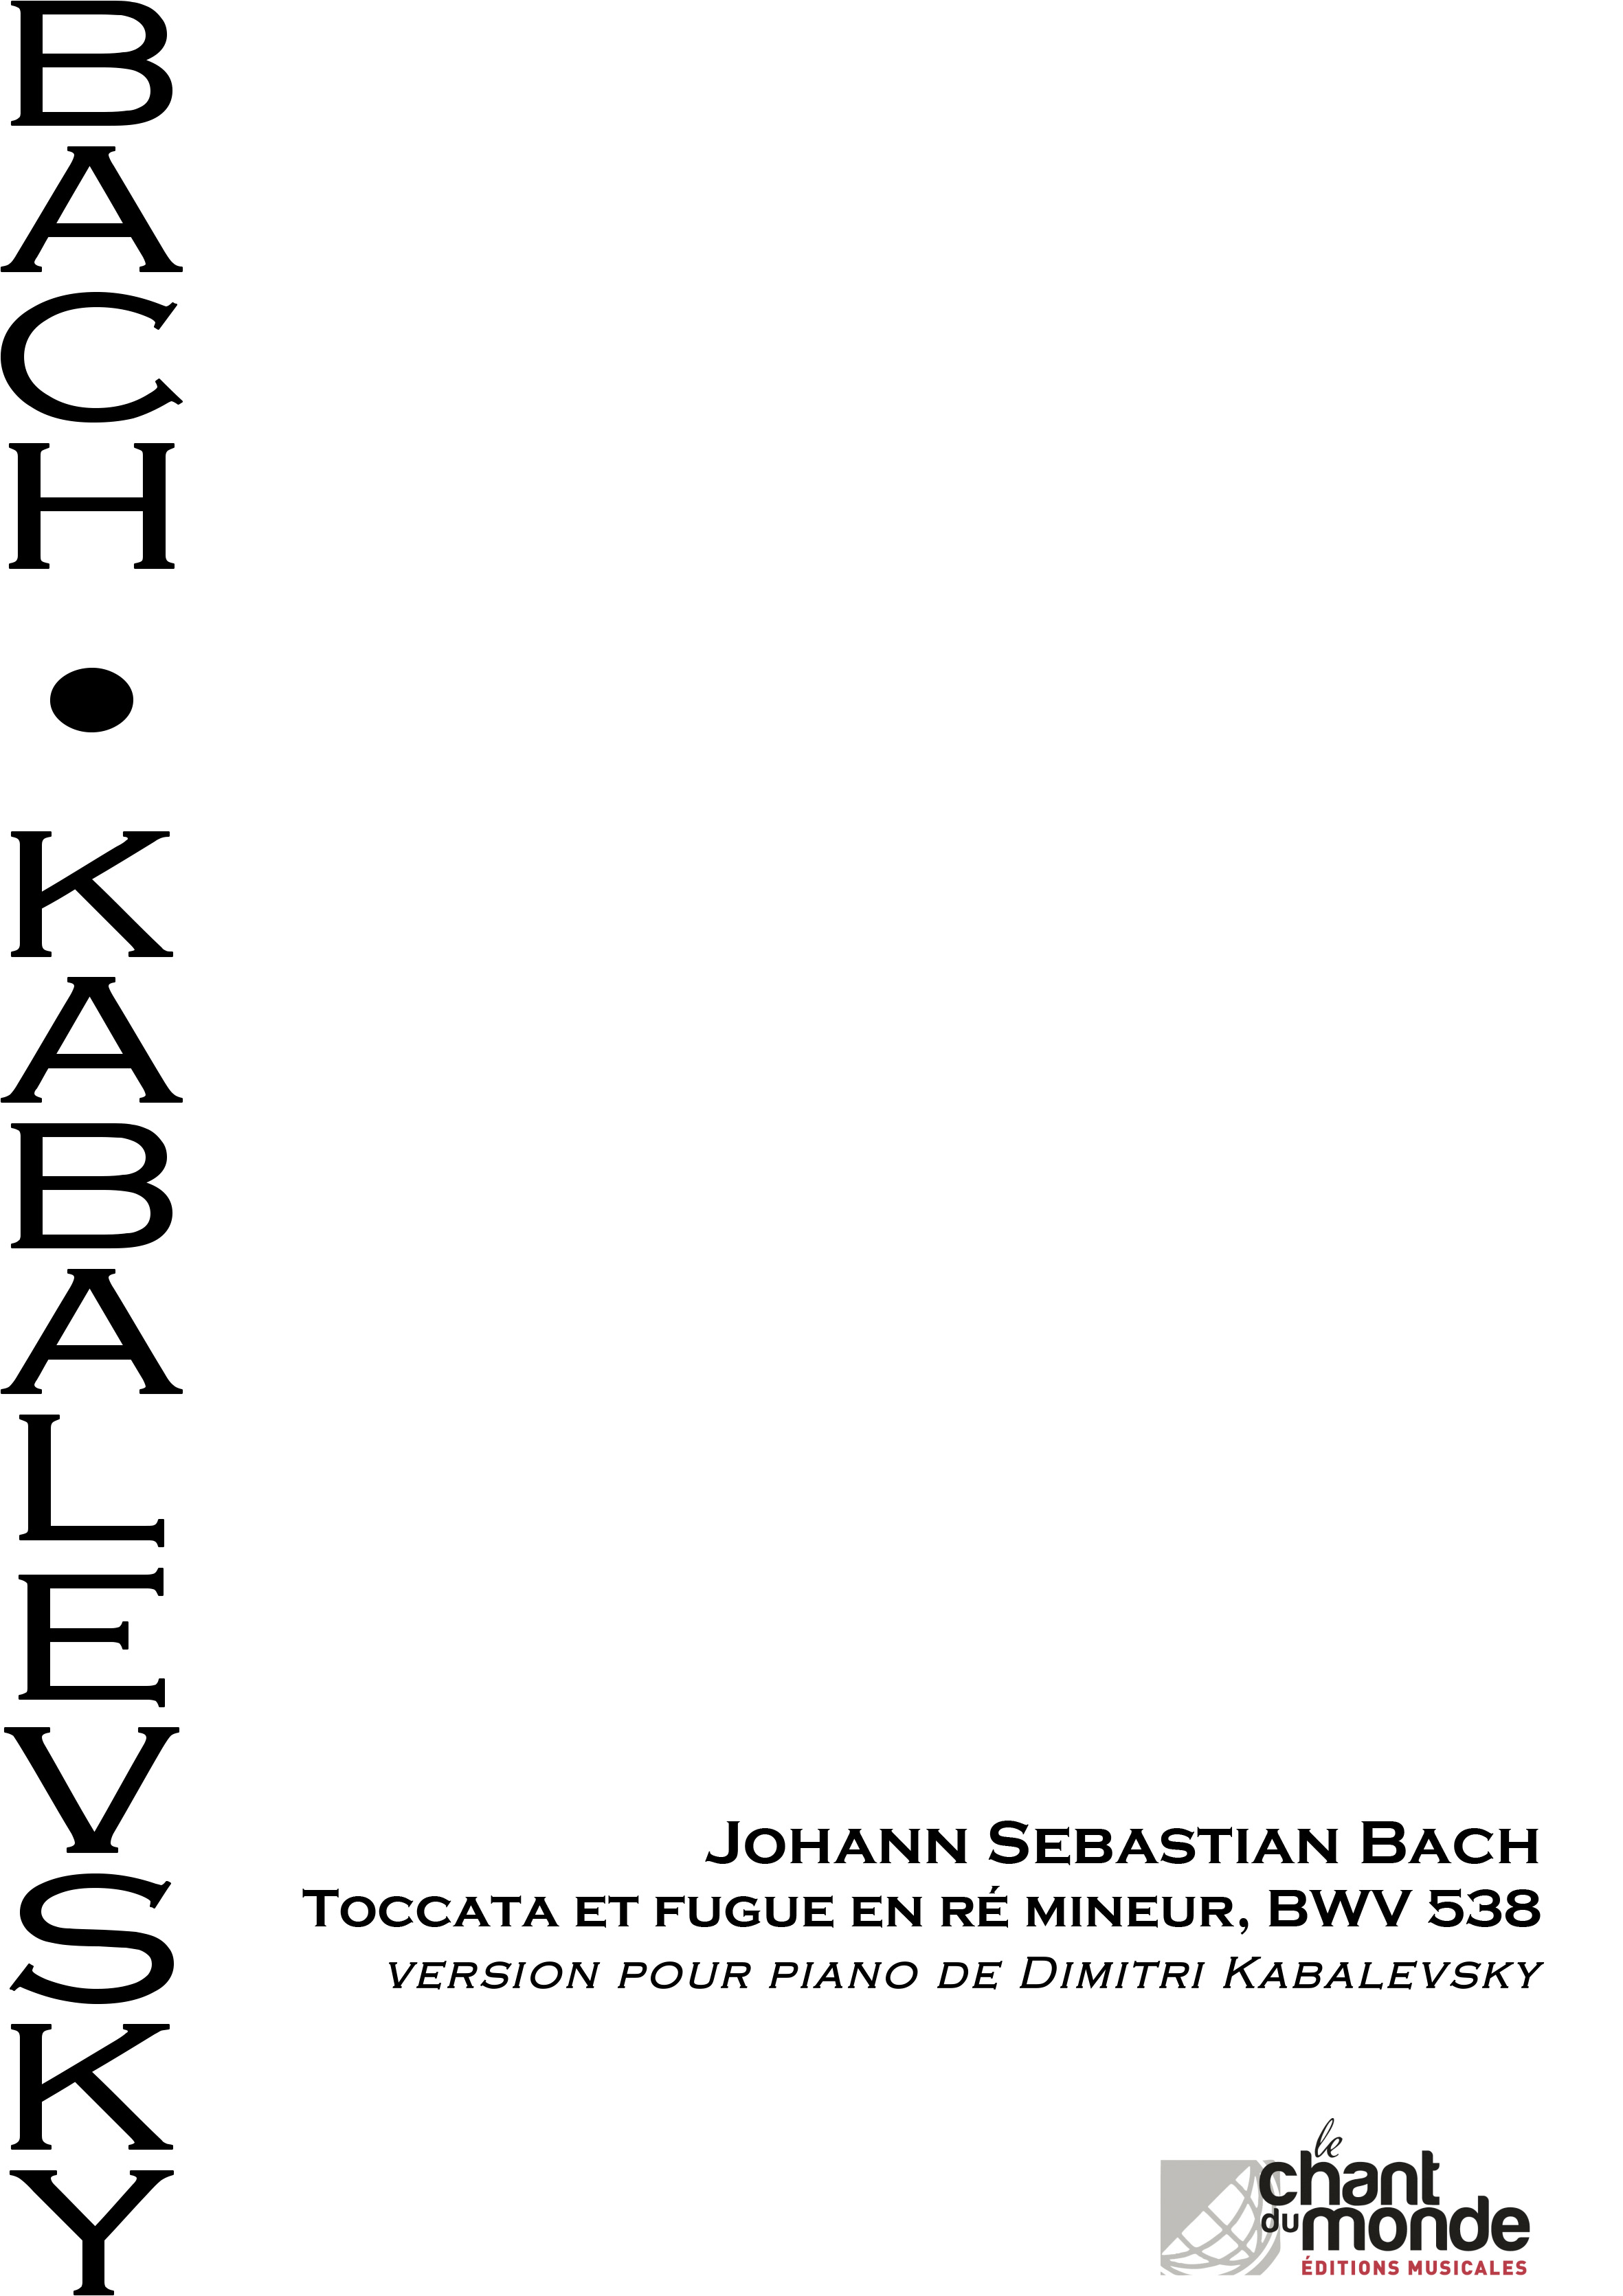 Dmitri Kabalevsky: Toccata Et Fugue En Ré Mineur BWV 538 De J.S Bach: Piano: